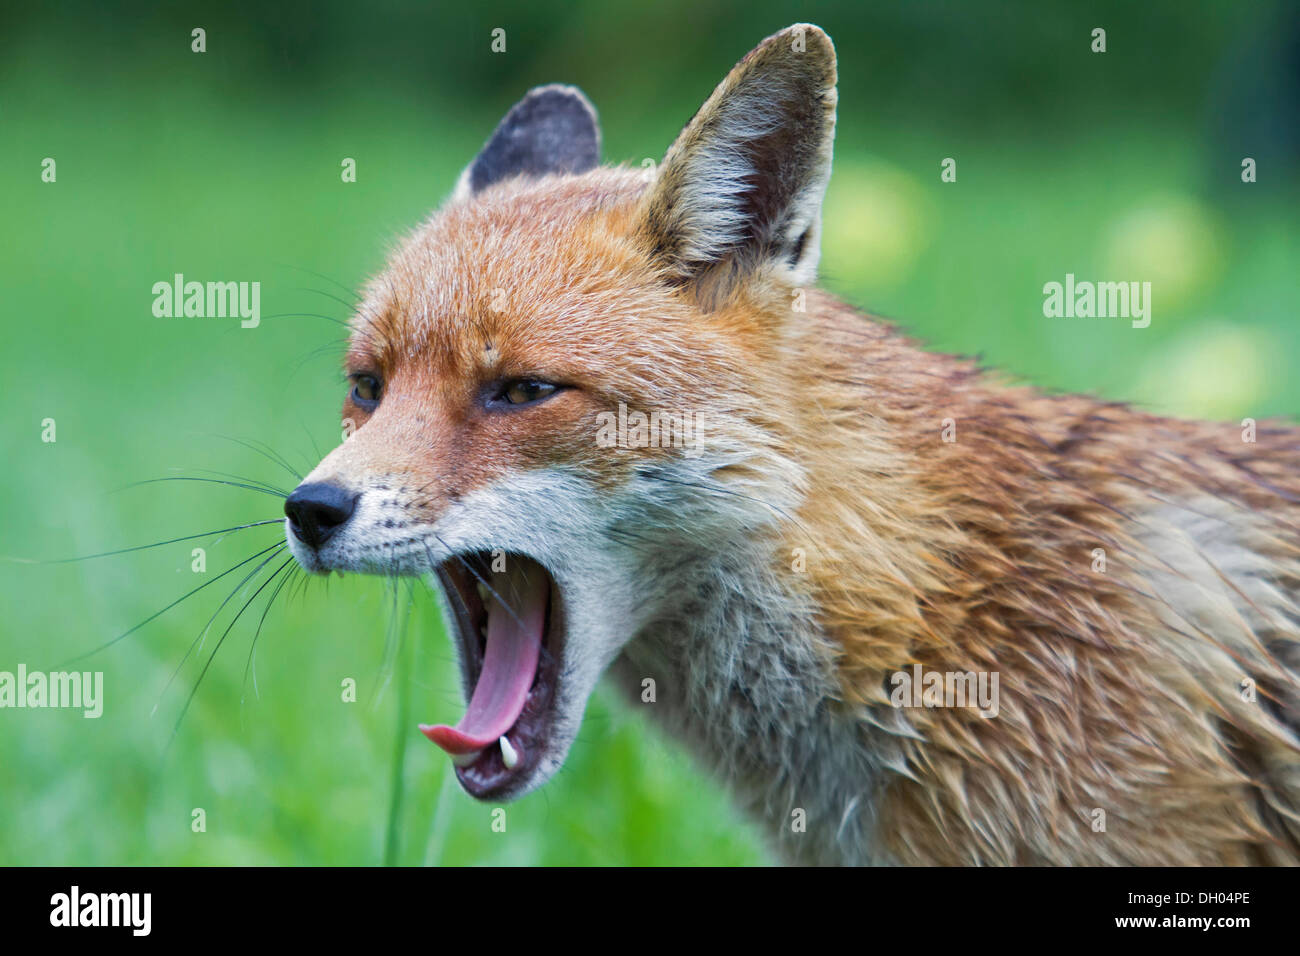 Le renard roux (Vulpes vulpes), le bâillement, Angleterre du Sud-Est, Royaume-Uni, Europe Banque D'Images